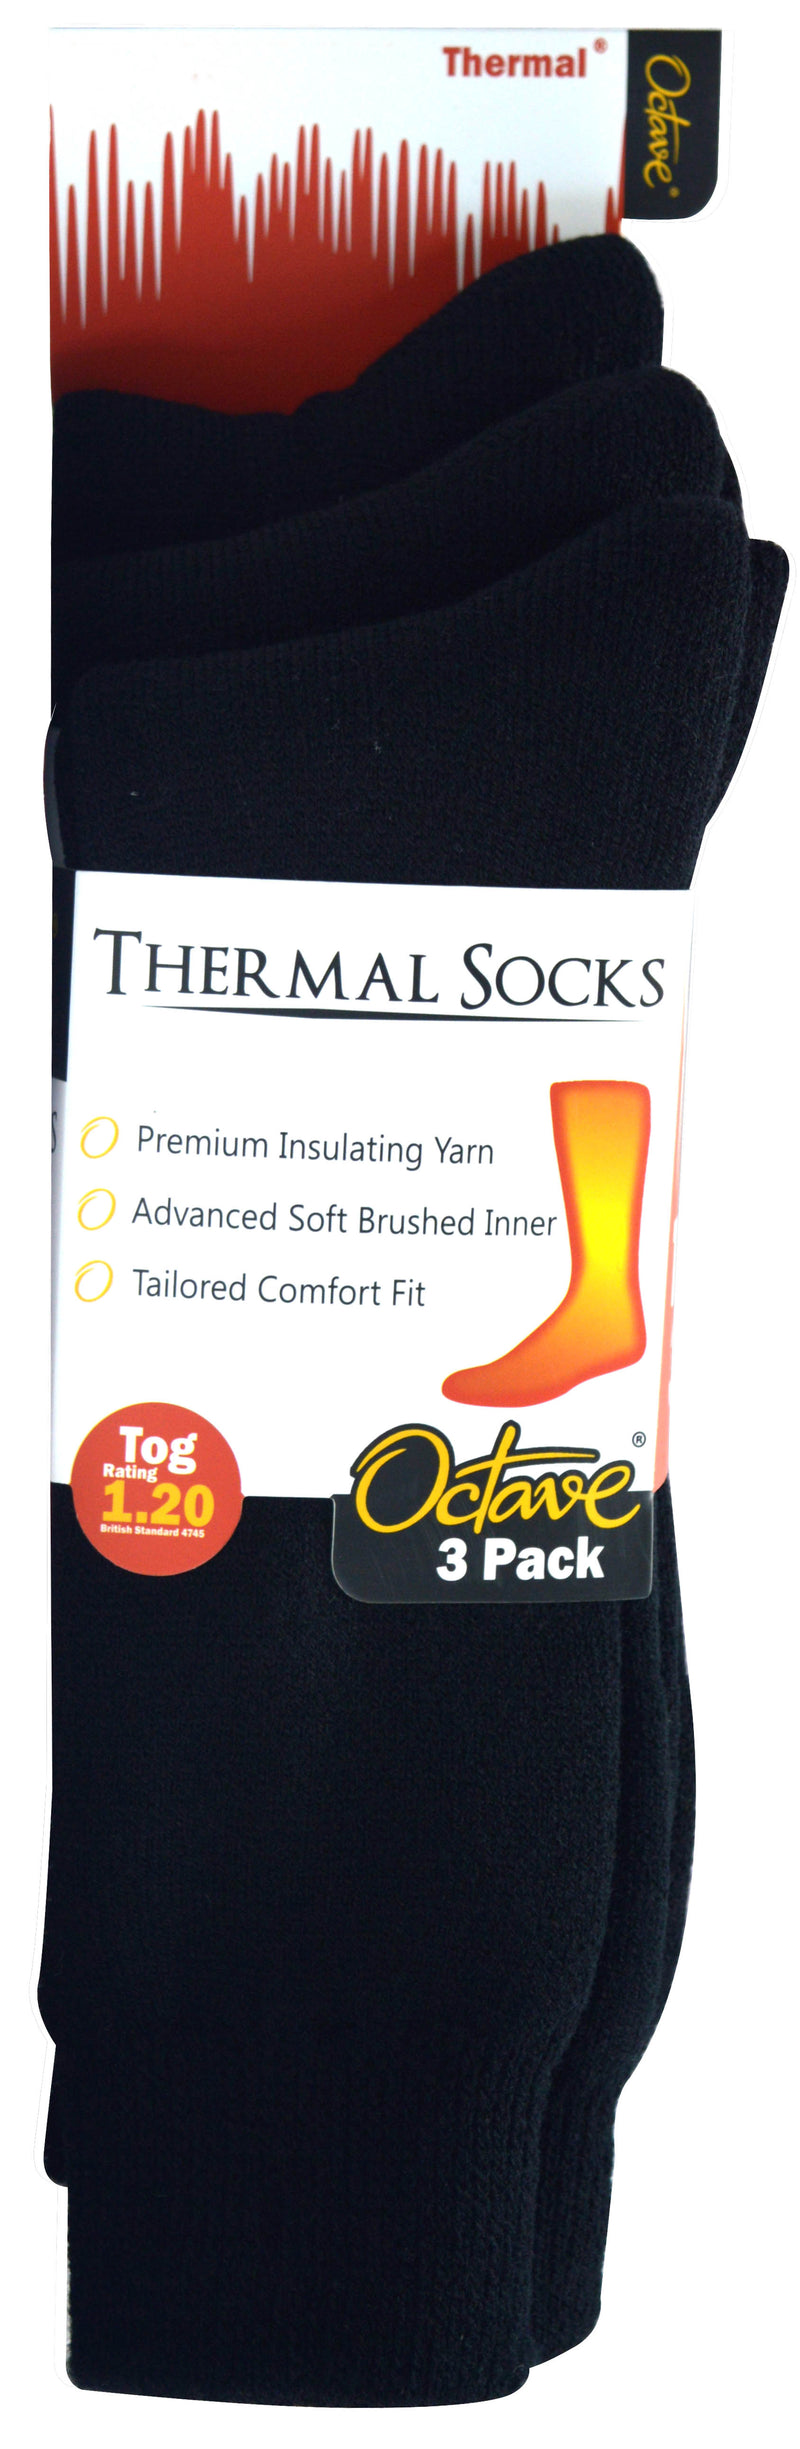 OCTAVE Mens Thermal Socks - 1.2 TOG